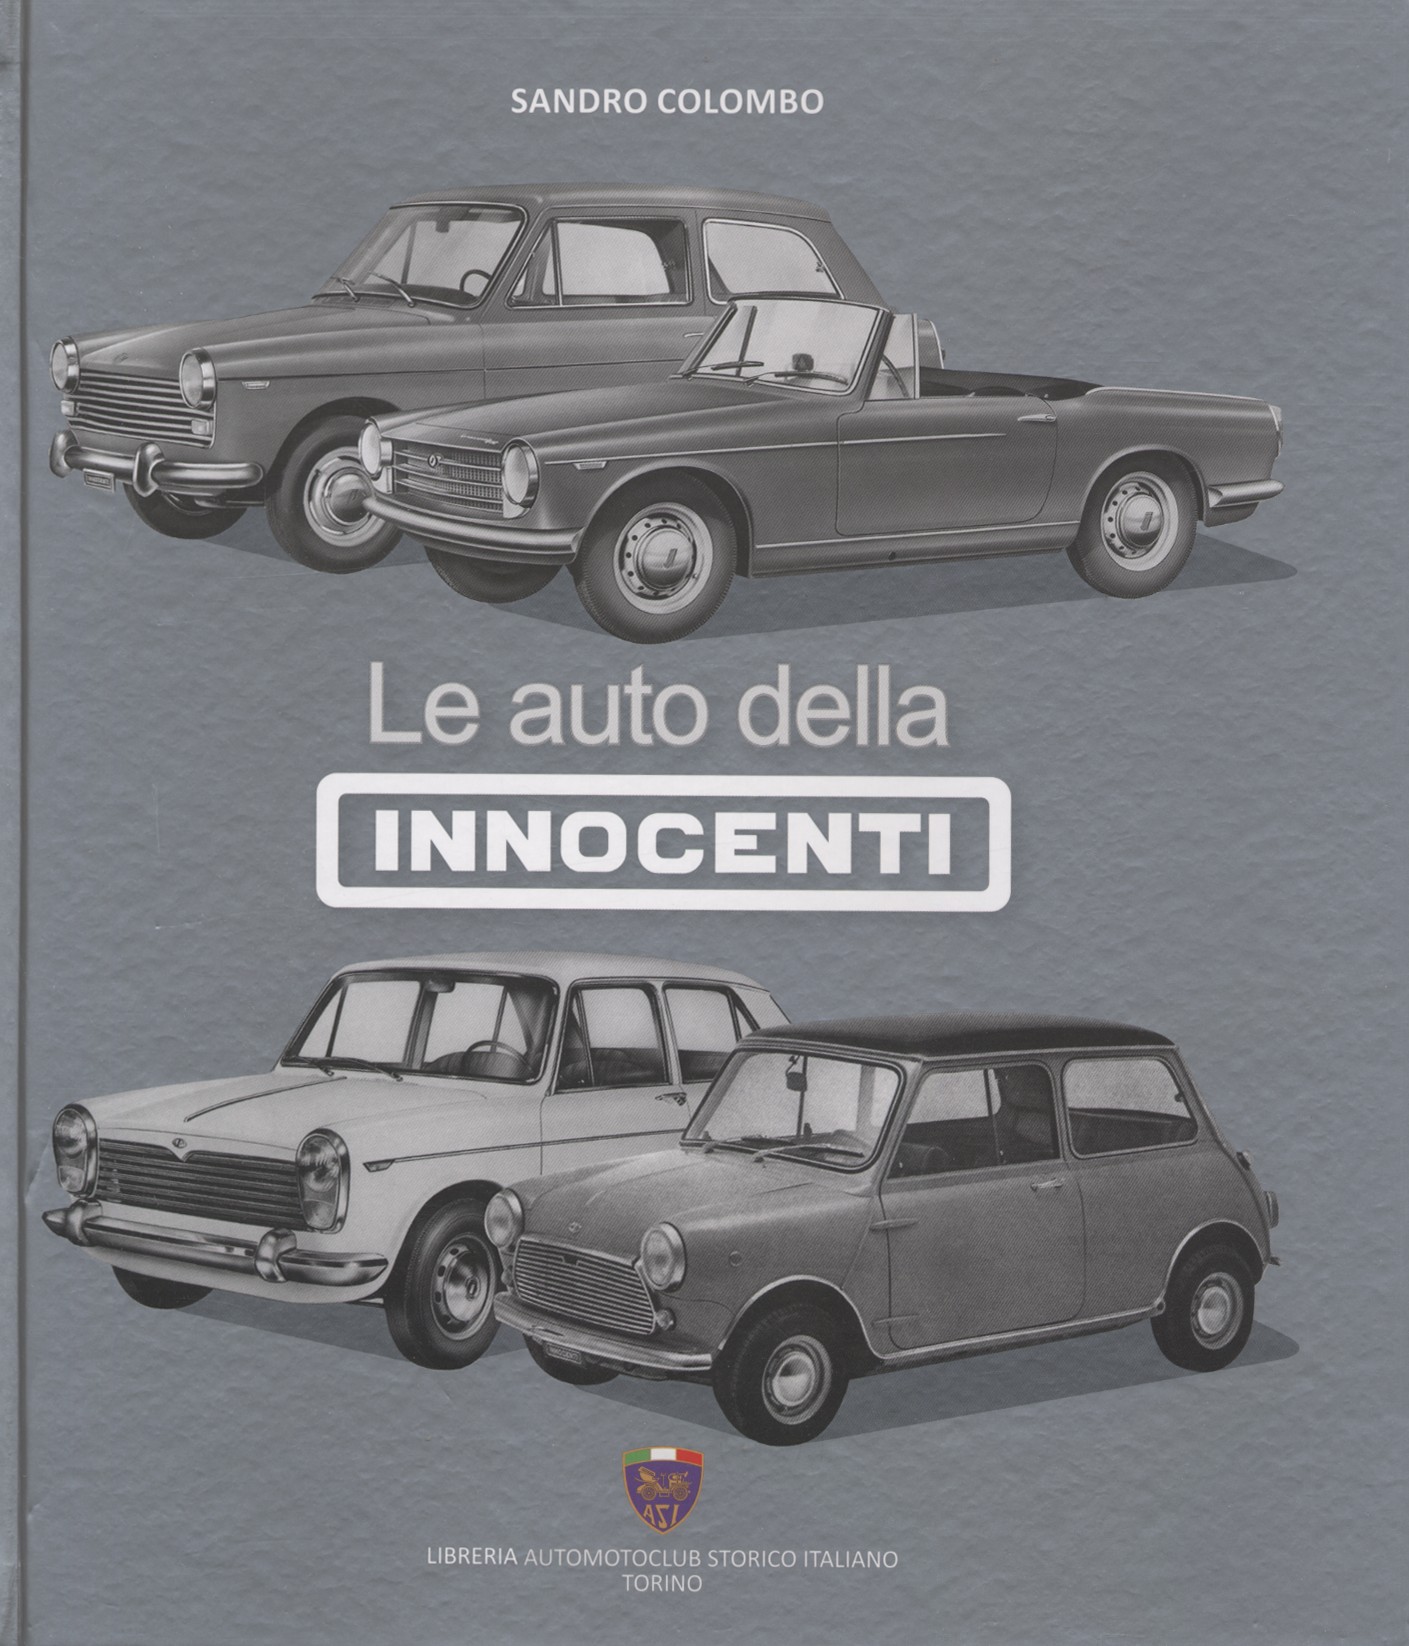 Le auto dell’Innocenti di Sandro Colombo: immancabile per  gli appasionati della marca.